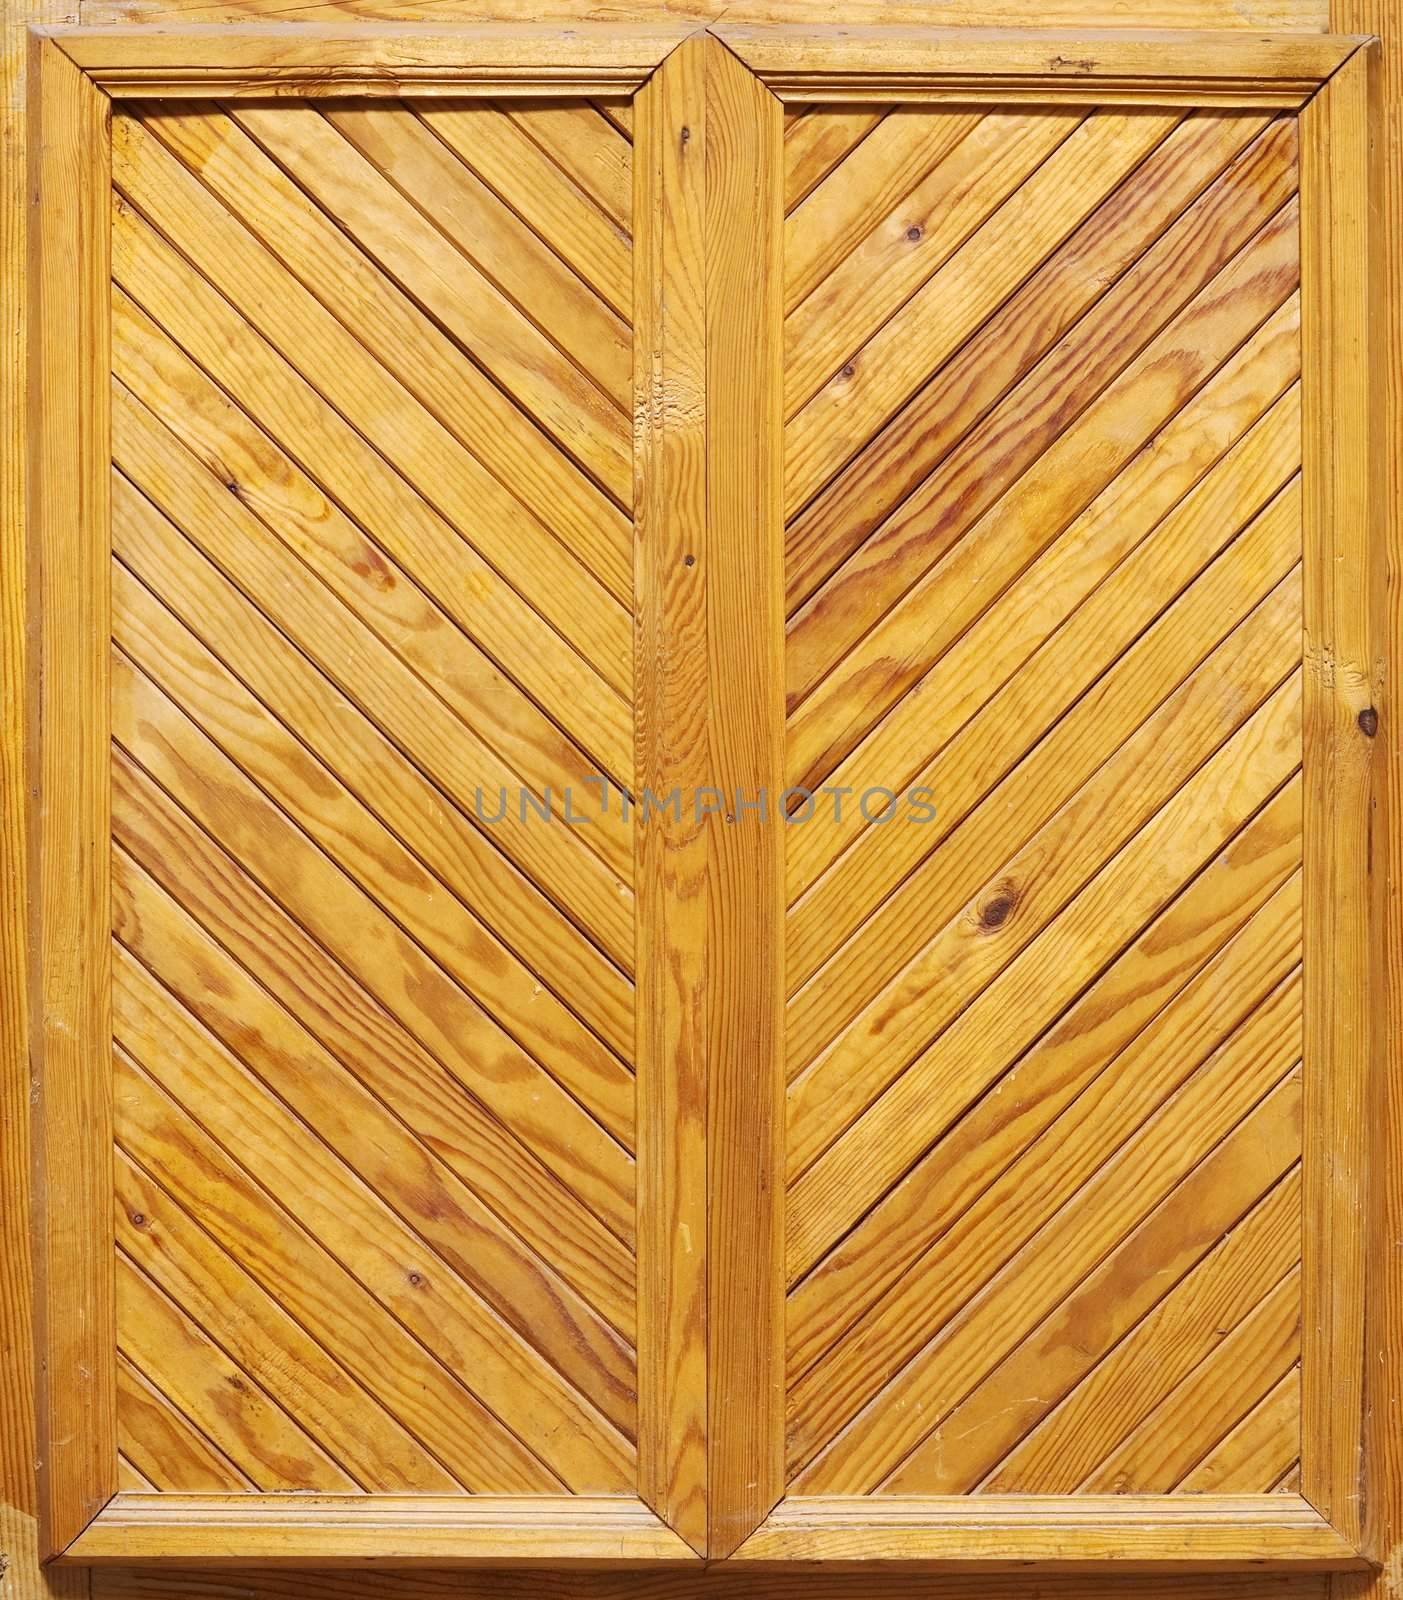 The surface of yellow wooden door